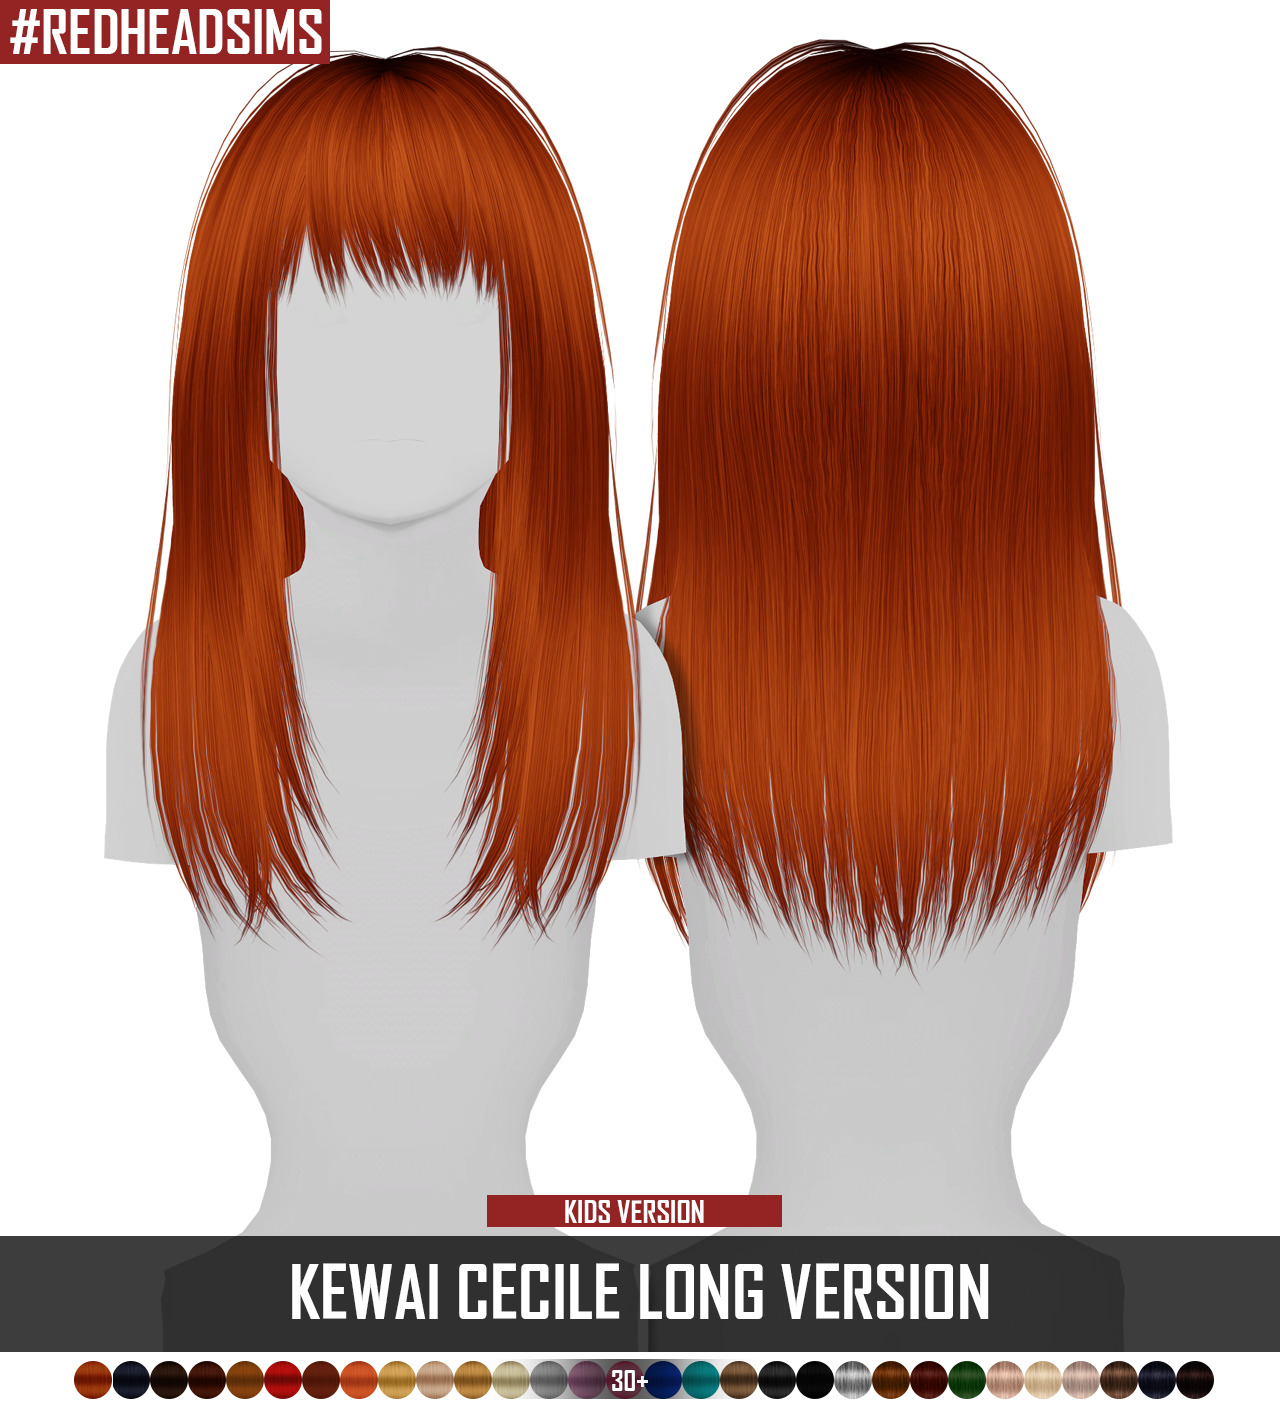 cute hair for redheads sims 4 cc